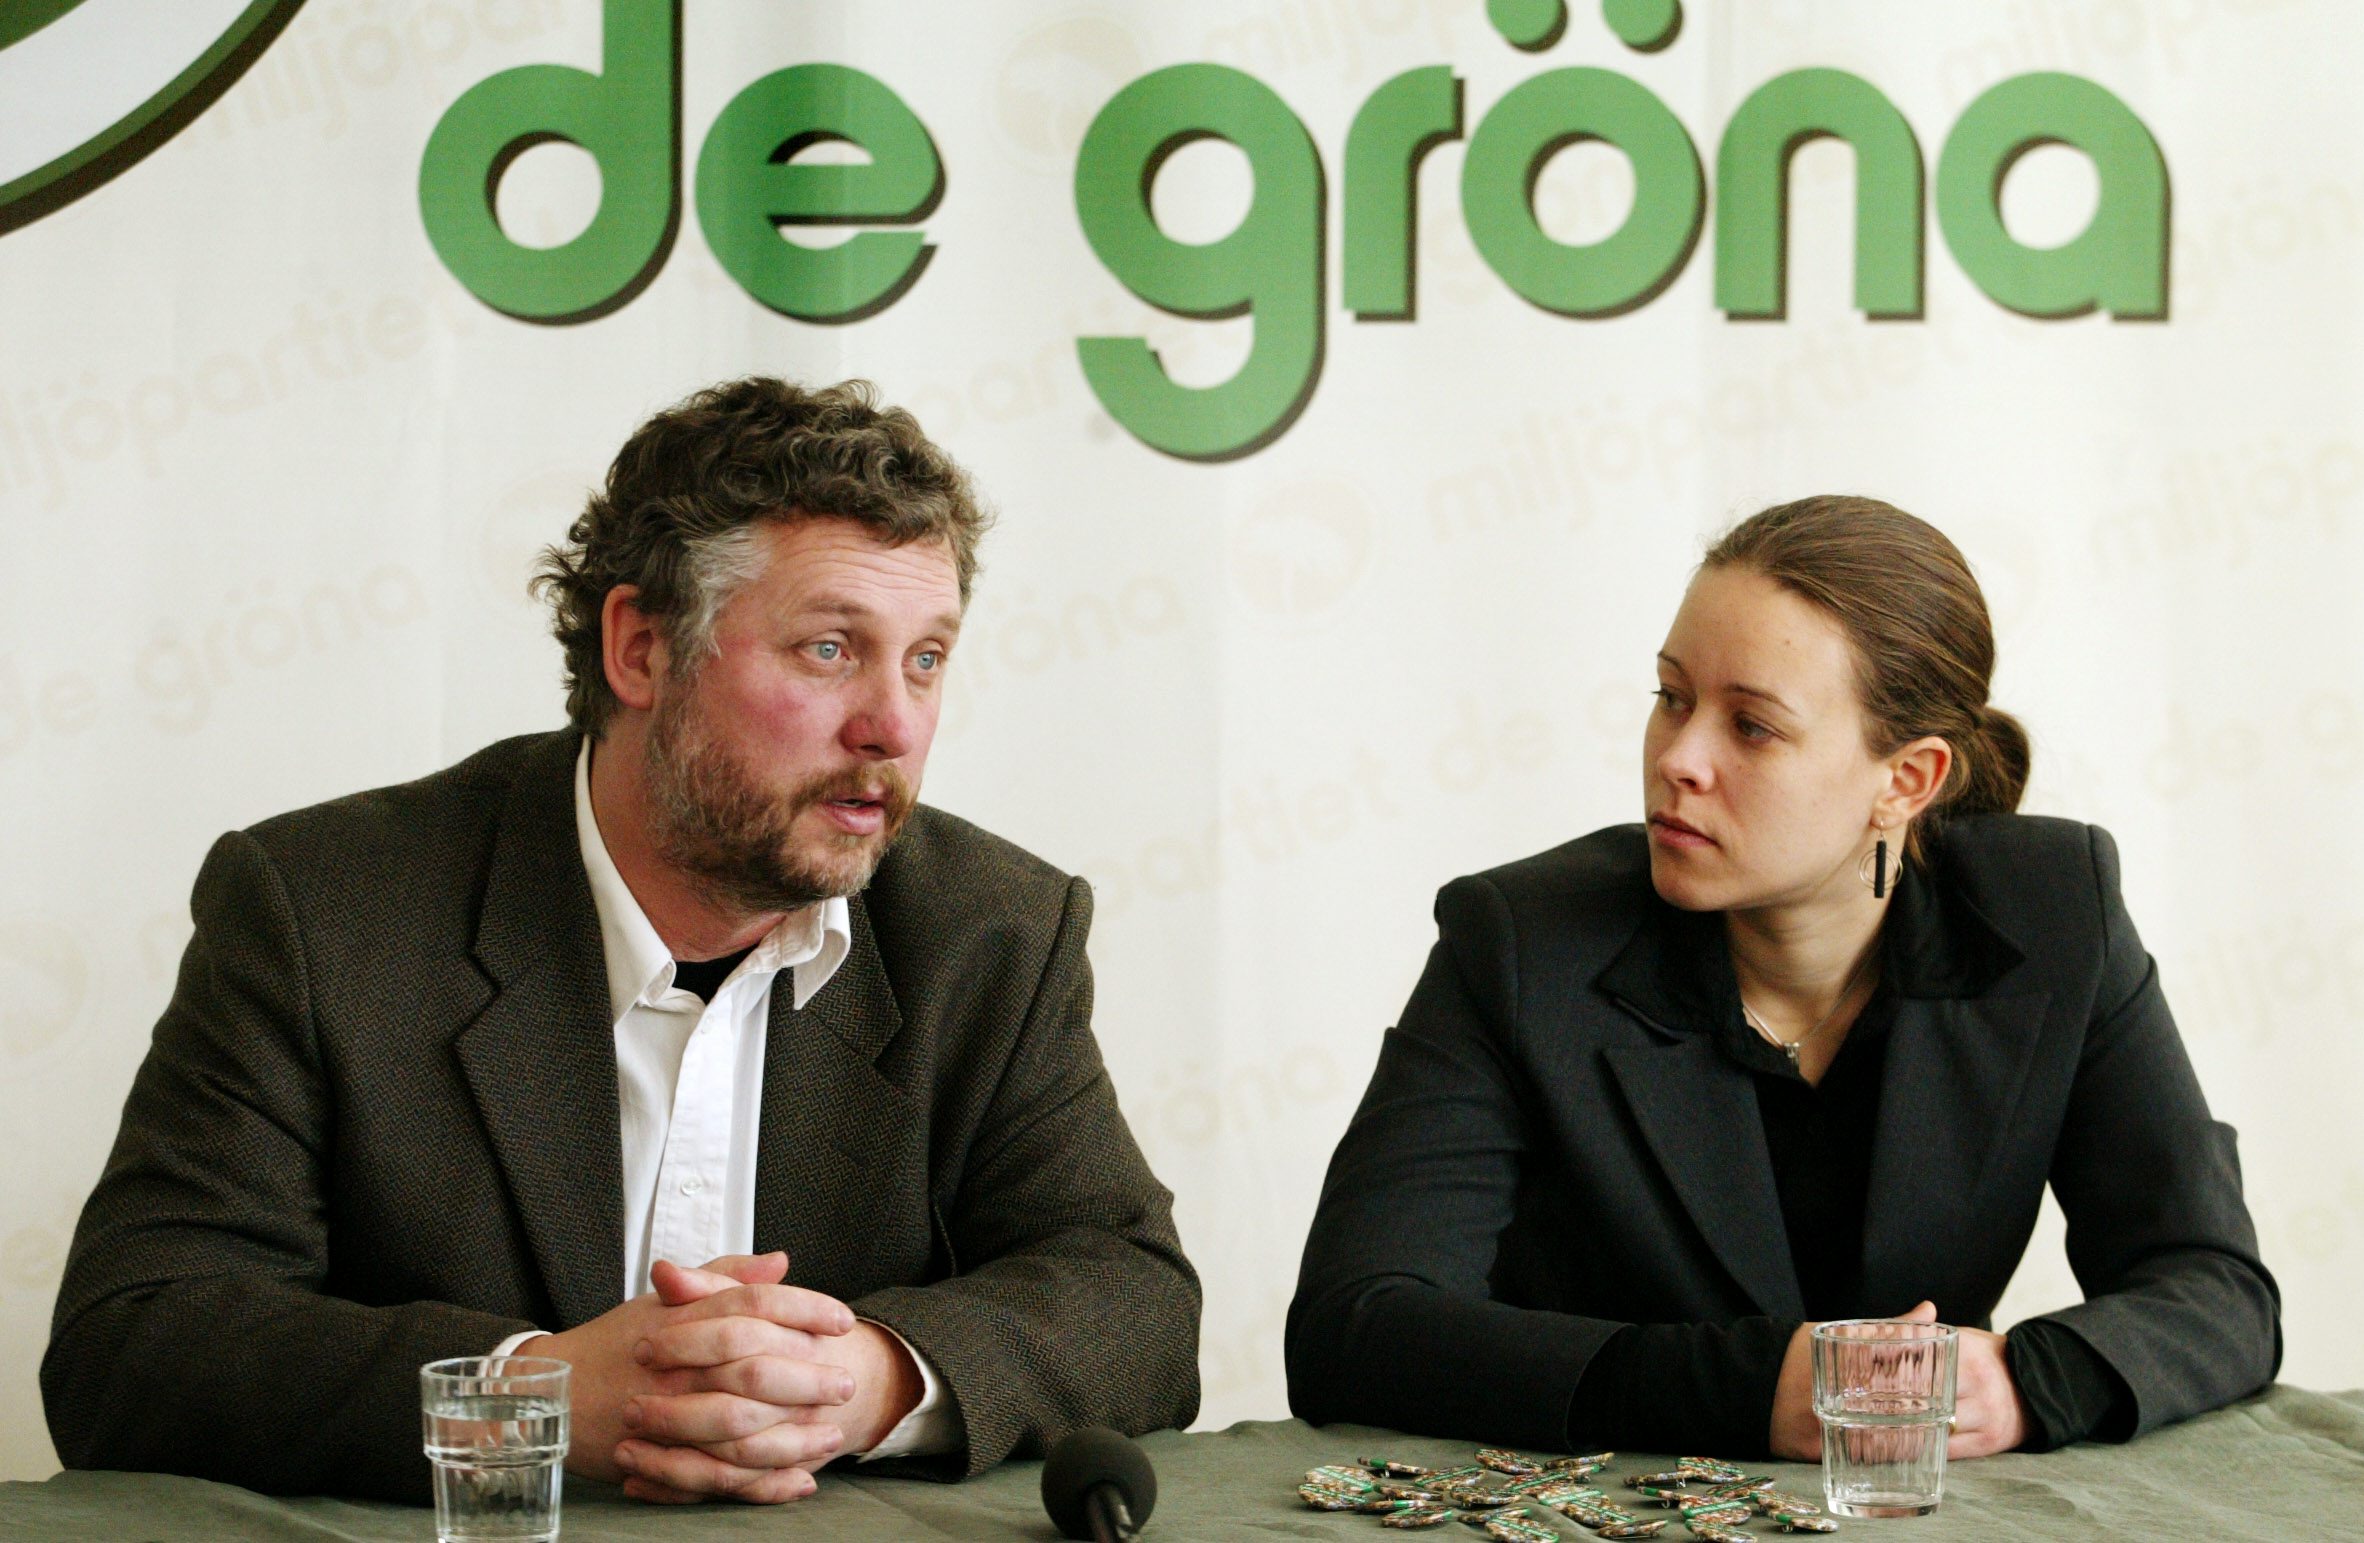 Järnväg, Peter Eriksson, Miljöpartiet, Tågtrafiken, Riksdagsvalet 2010, Rödgröna regeringen, SJ